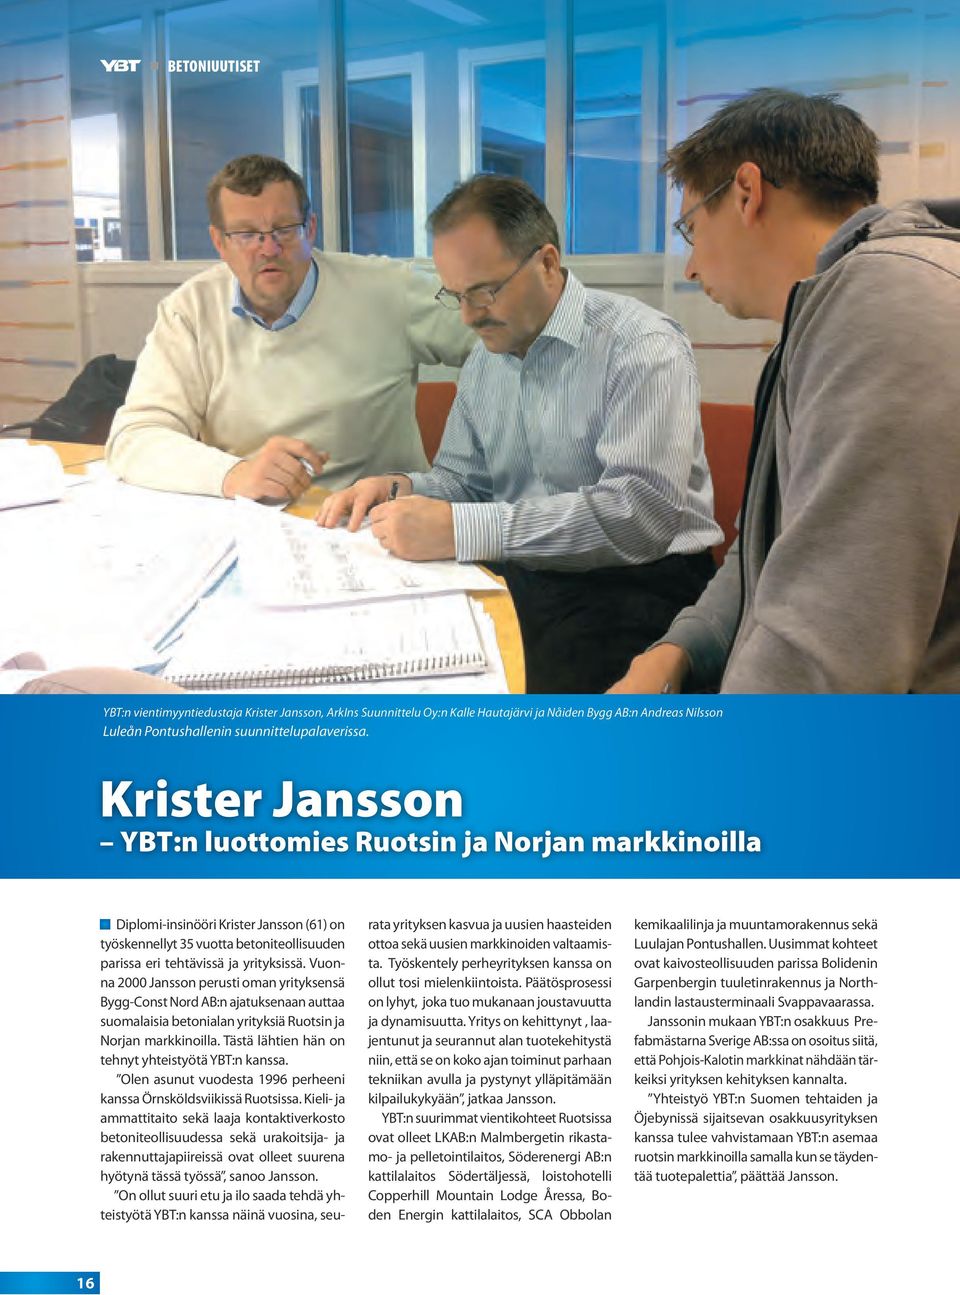 Vuonna 2000 Jansson perusti oman yrityksensä Bygg-Const Nord AB:n ajatuksenaan auttaa suomalaisia betonialan yrityksiä Ruotsin ja Norjan markkinoilla.